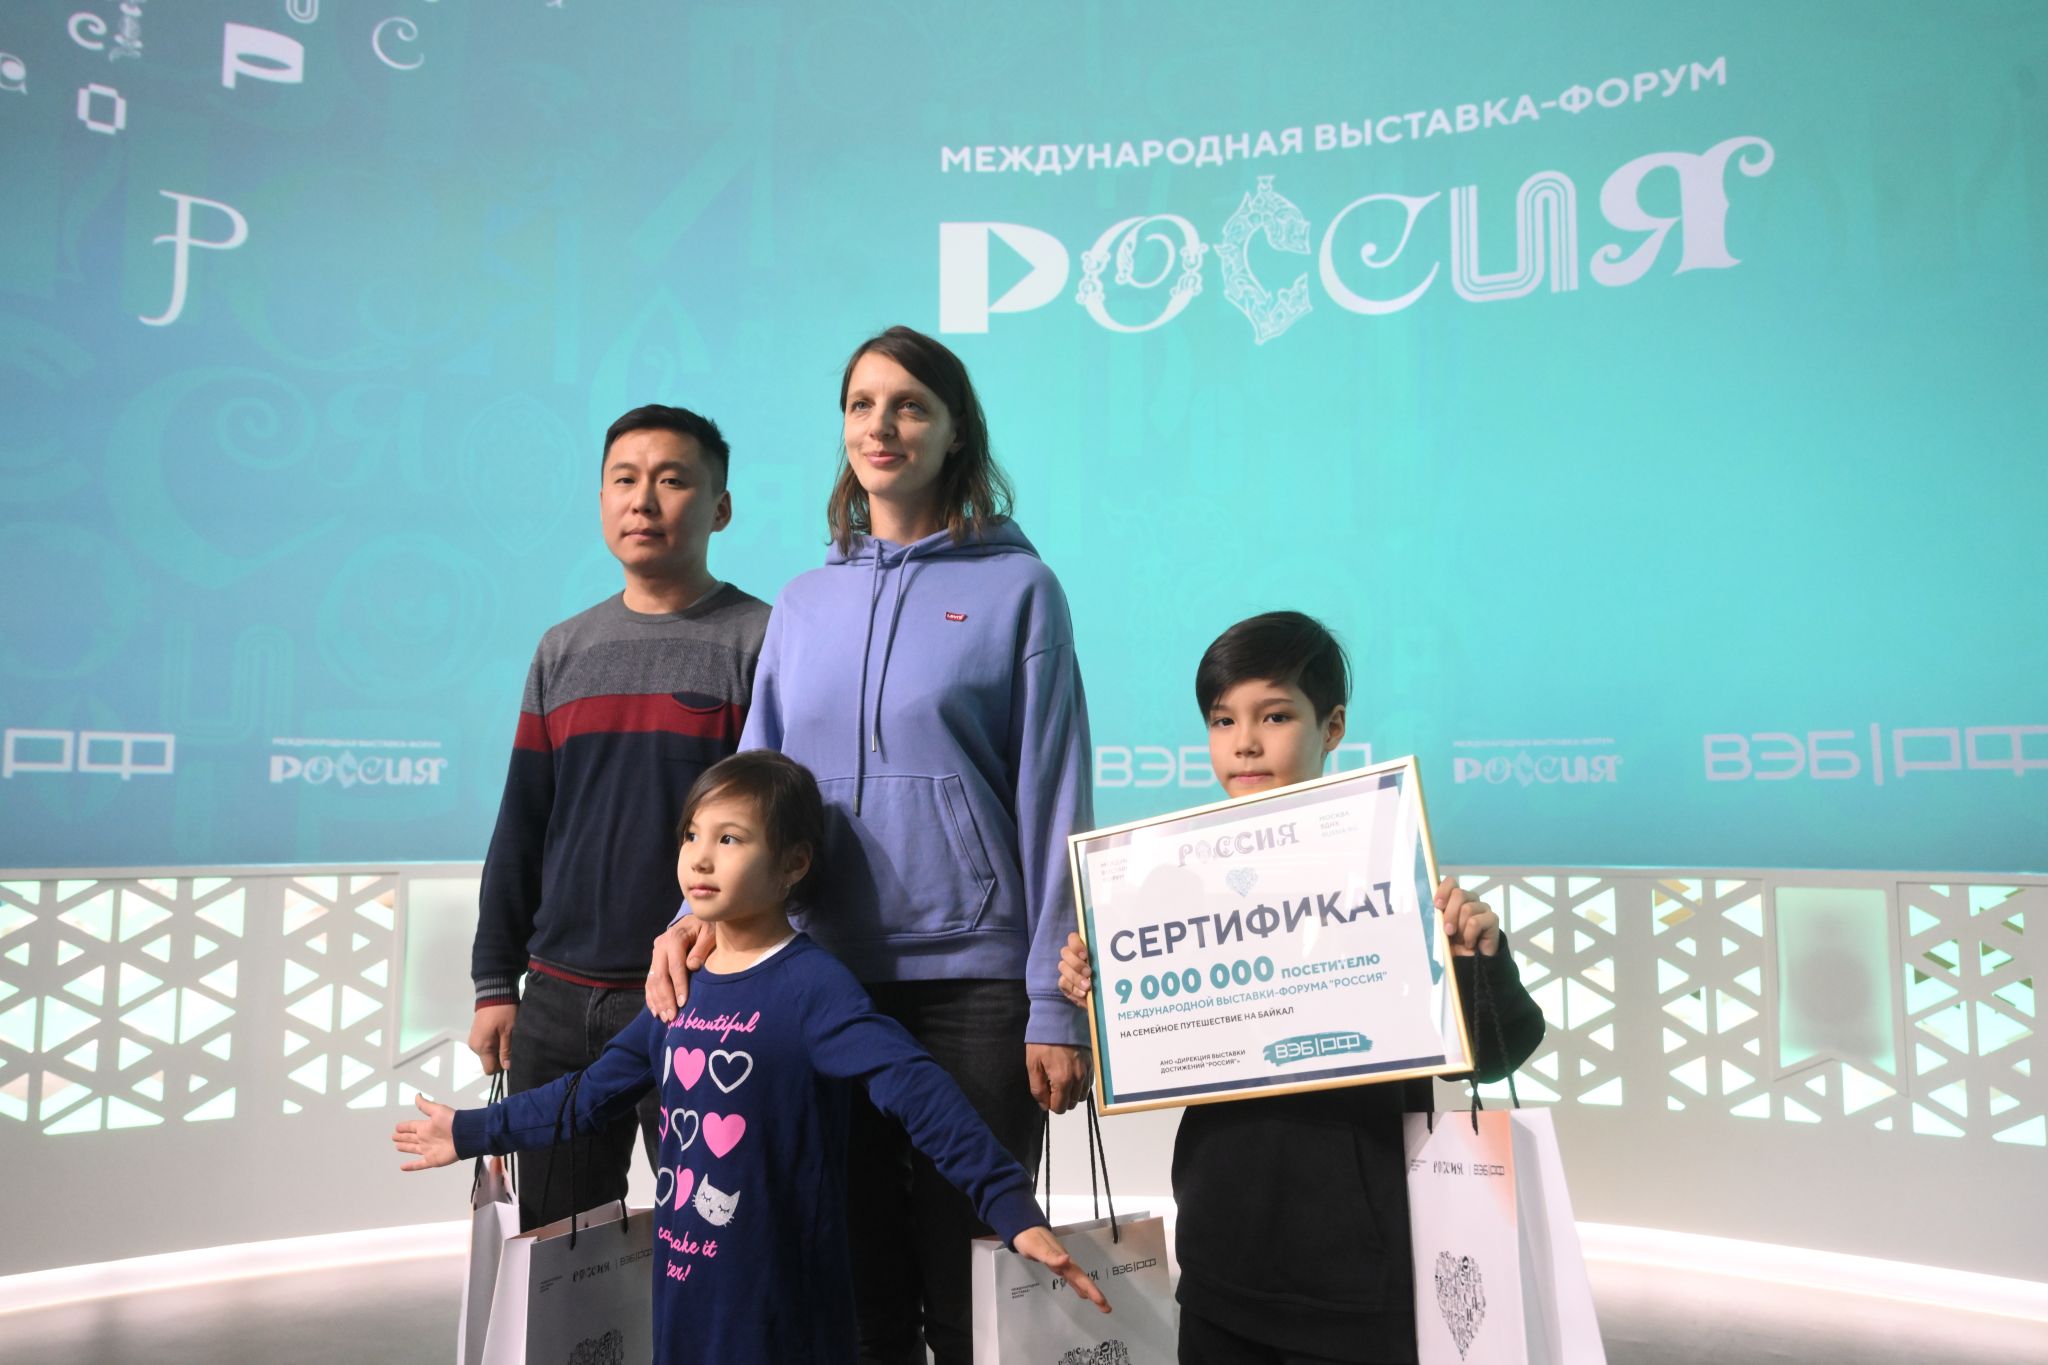 9-летний мальчик пришел на выставку "Россия" и выиграл сертификат на путешествие